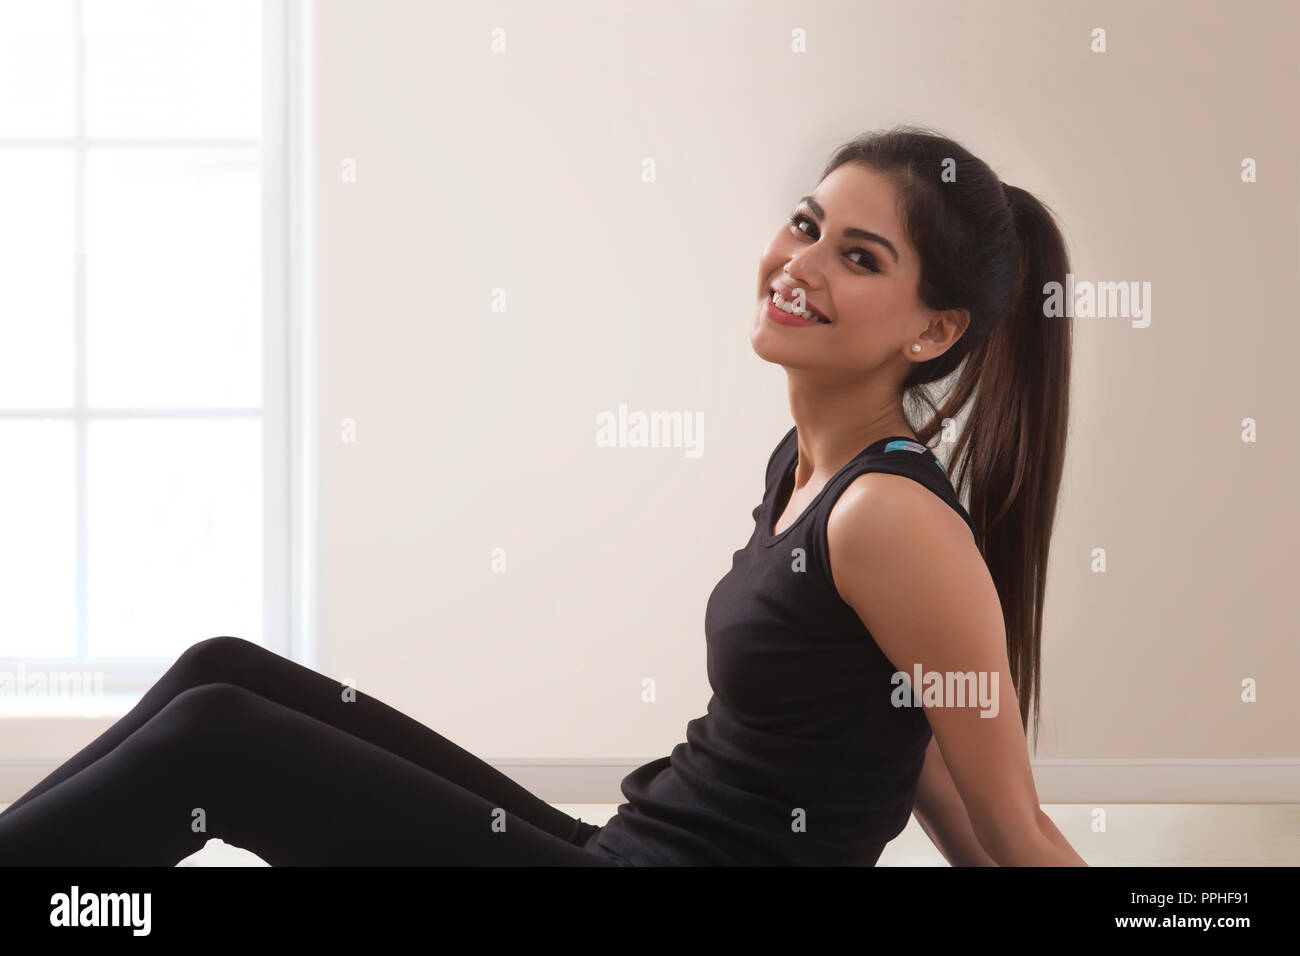 Cerca del joven sonriente mujer fitness en chándal haciendo yoga sentada en el suelo. Foto de stock